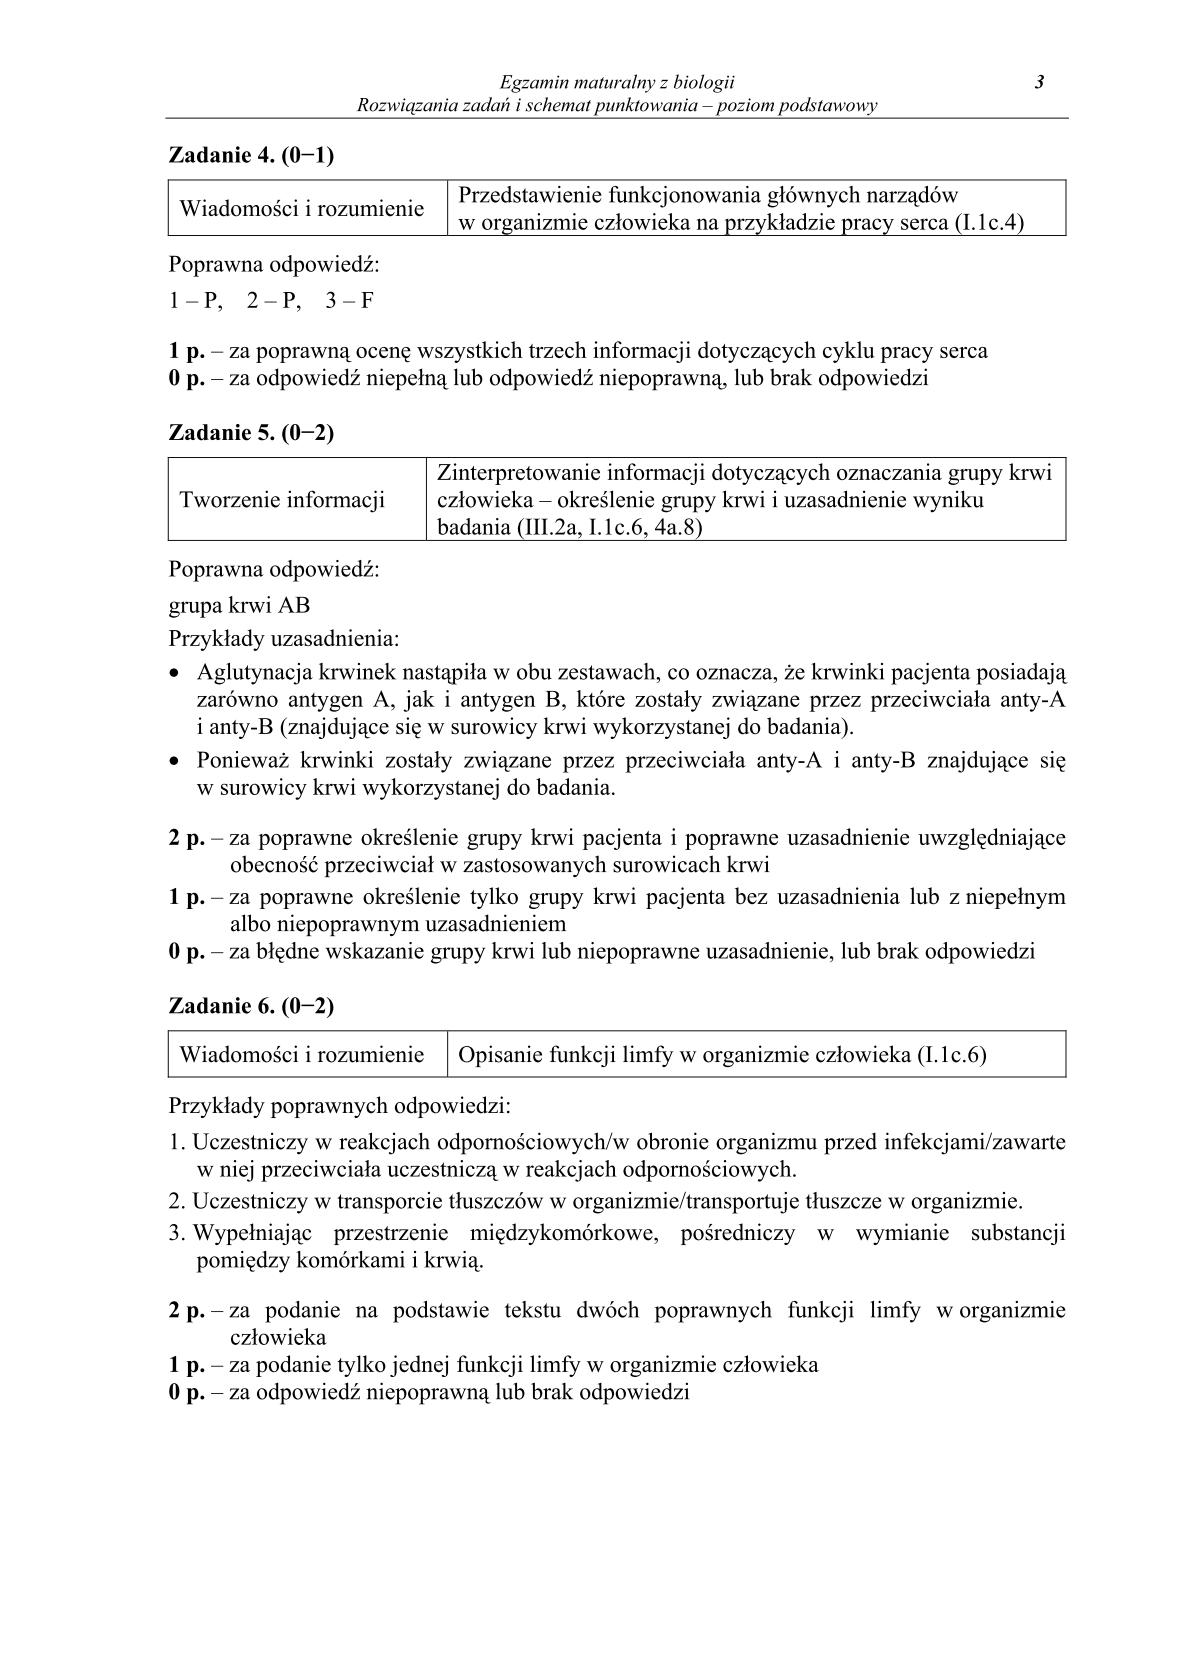 odpowiedzi-biologia-poziom-podstawowy-matura-2014-str.3